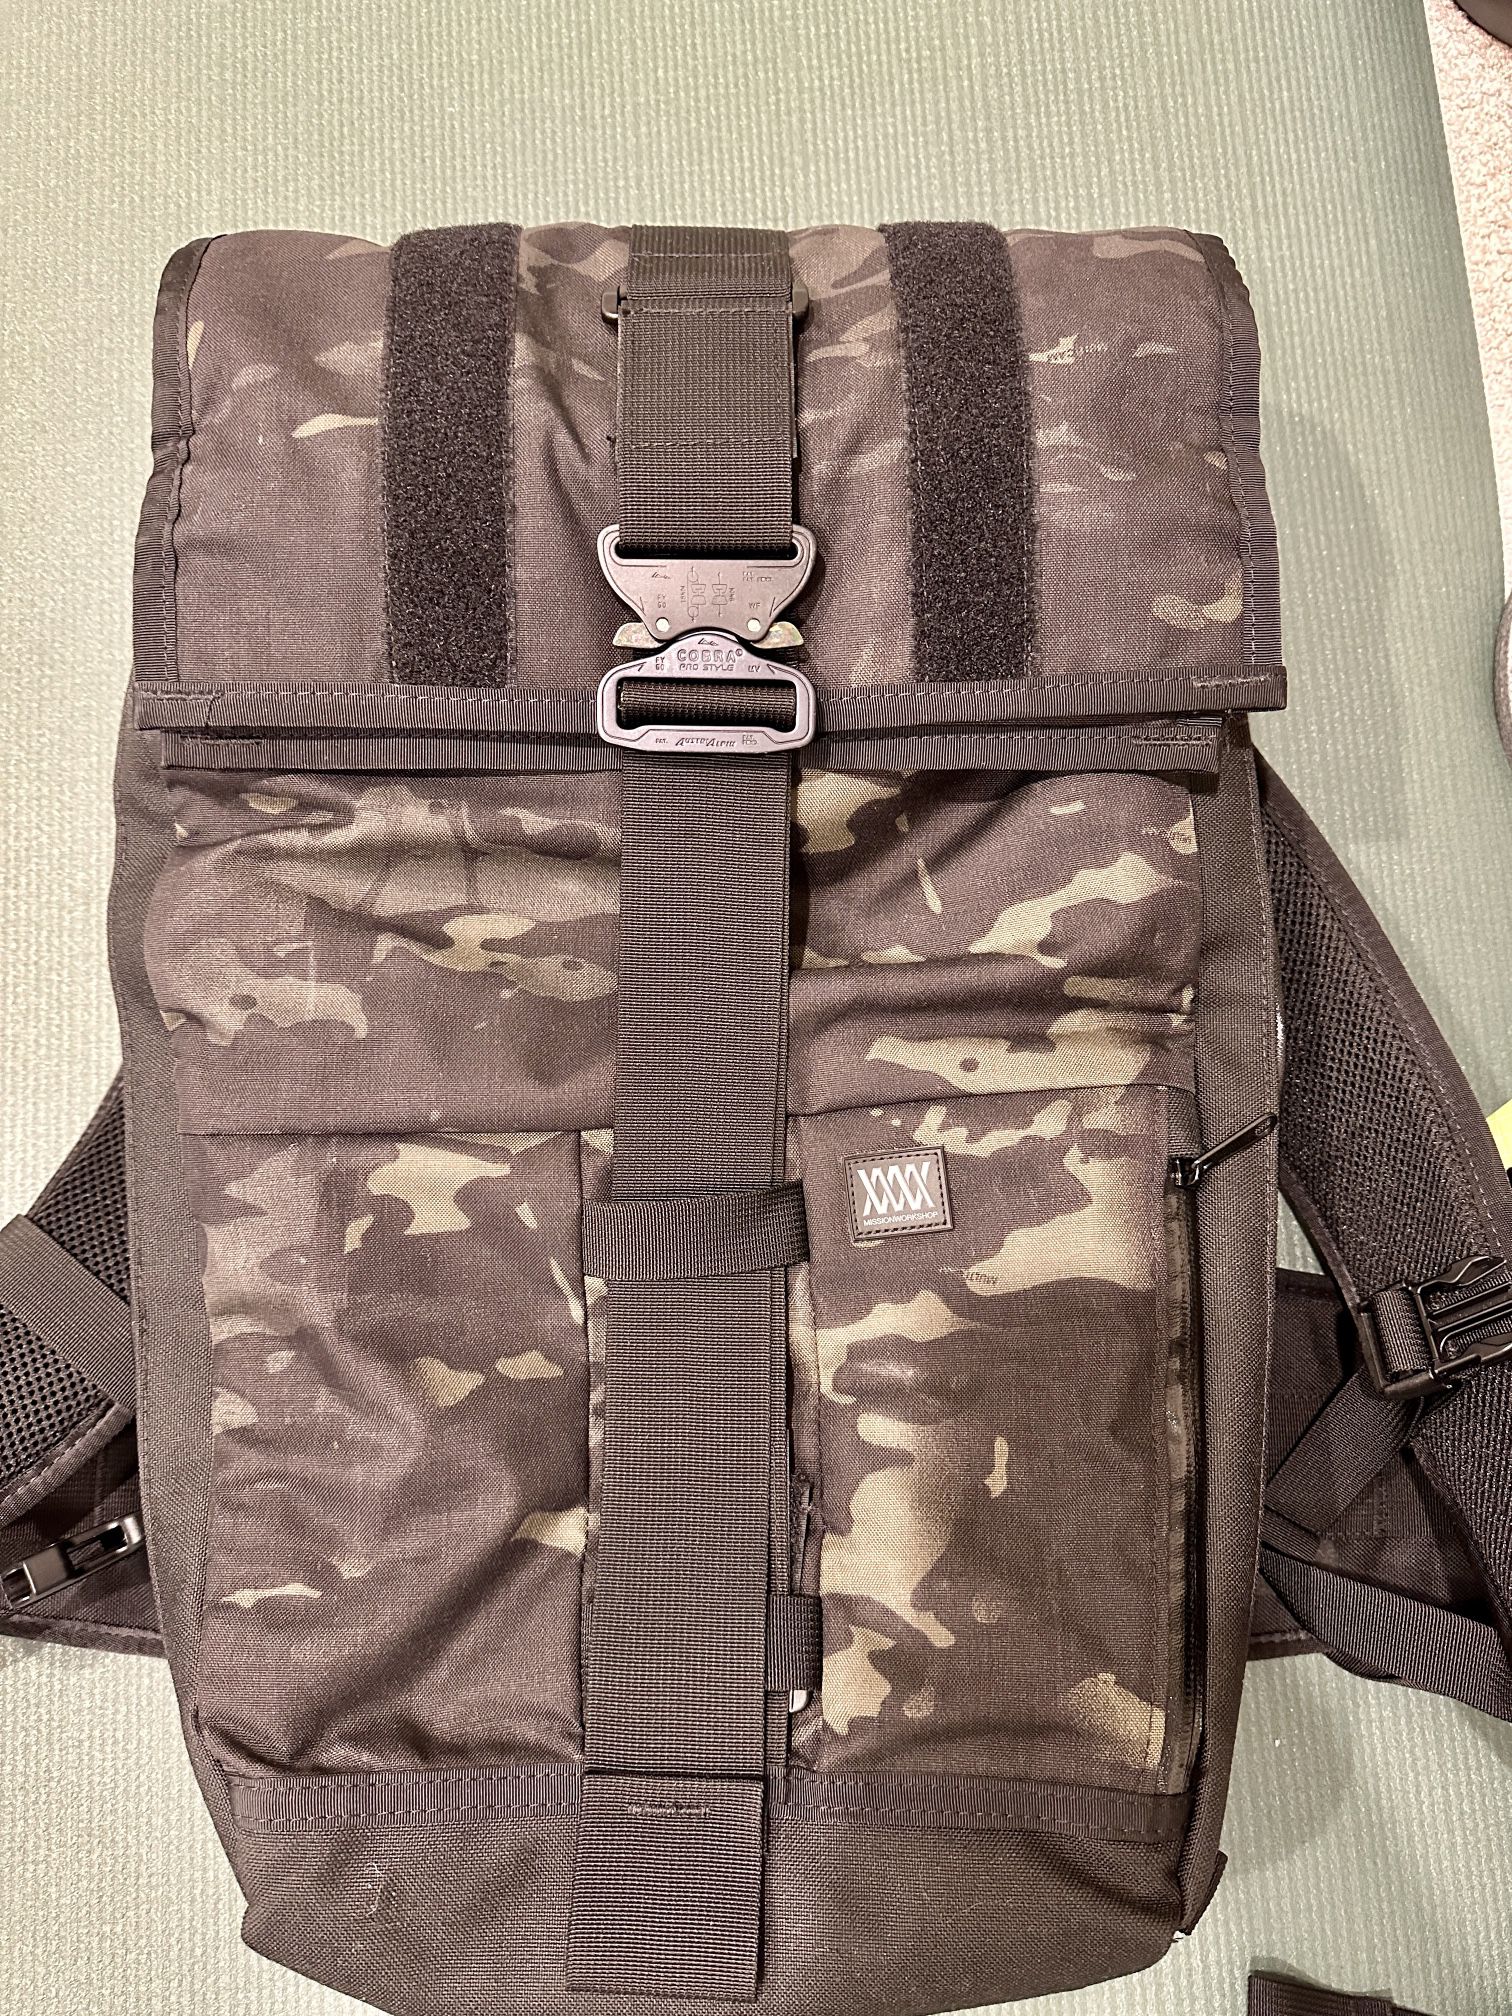 Mission Workshop Vandal Waterproof Backpack w/ Camera Capsule